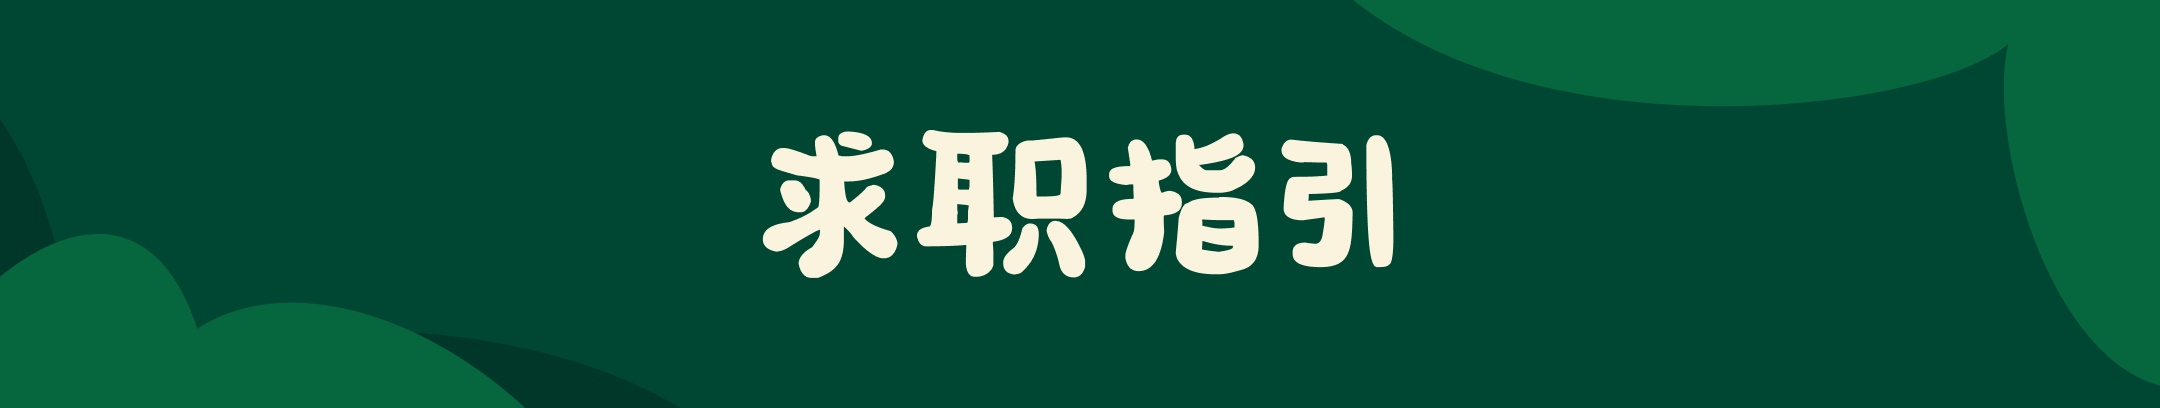 深绿色背景的宽幅 Banner，中间白色大字 “求职指引”。